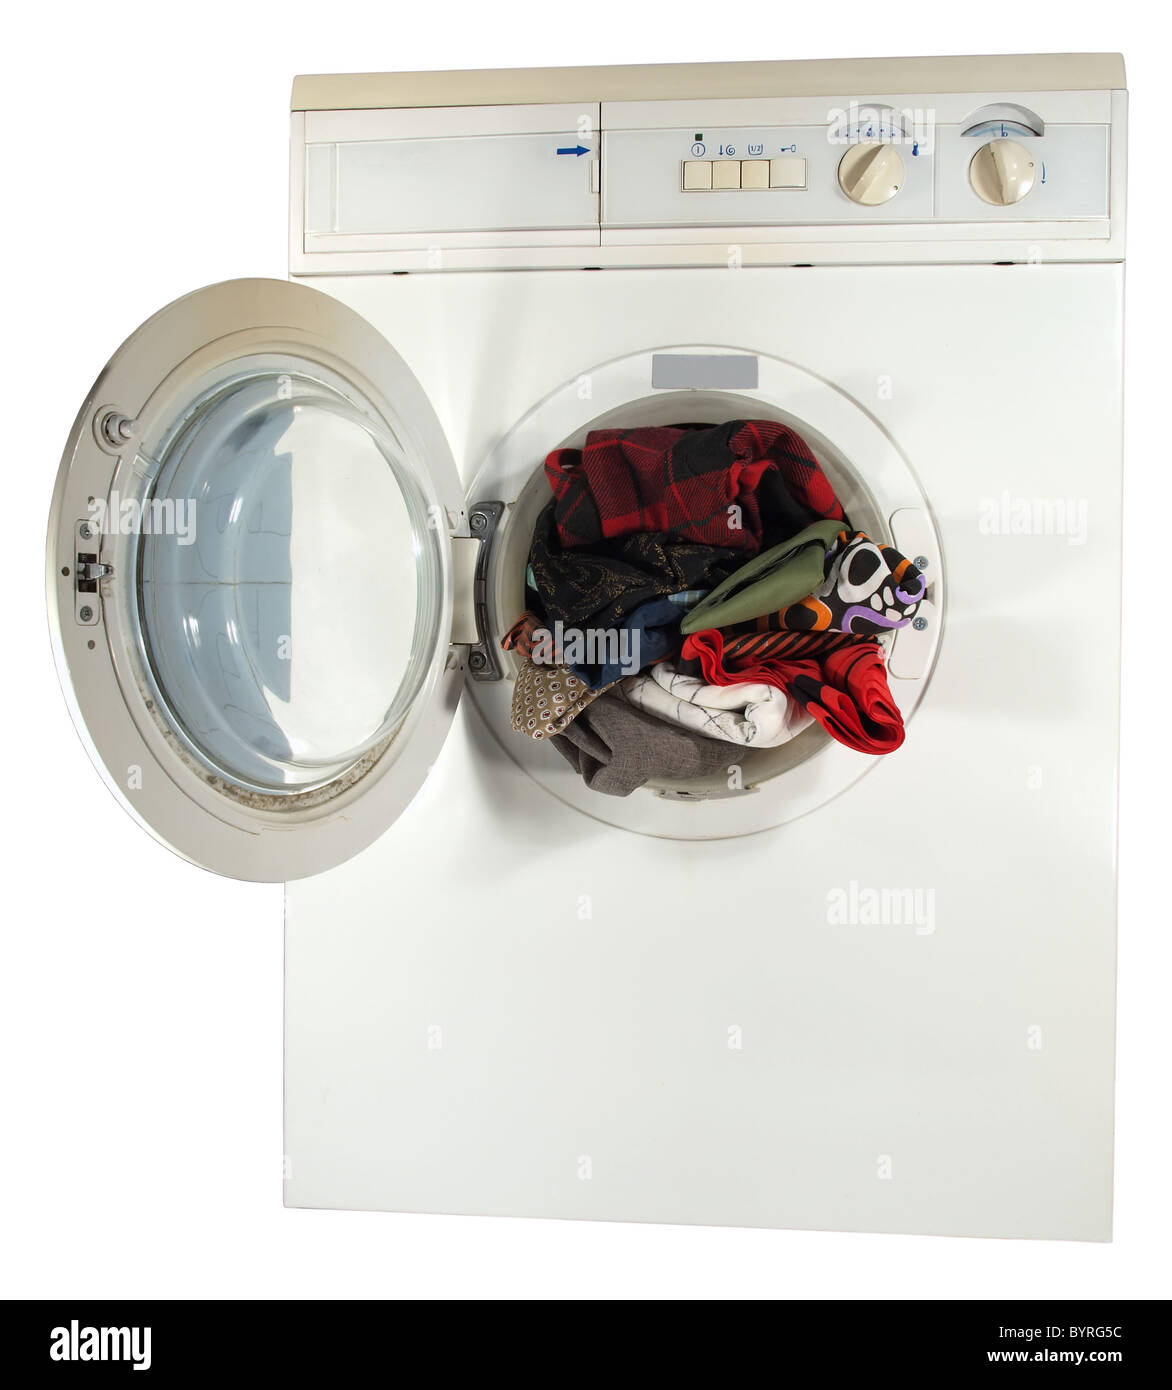 Die Waschmaschine mit der offenen Luke innen Farbe Leinen Stockfotografie -  Alamy